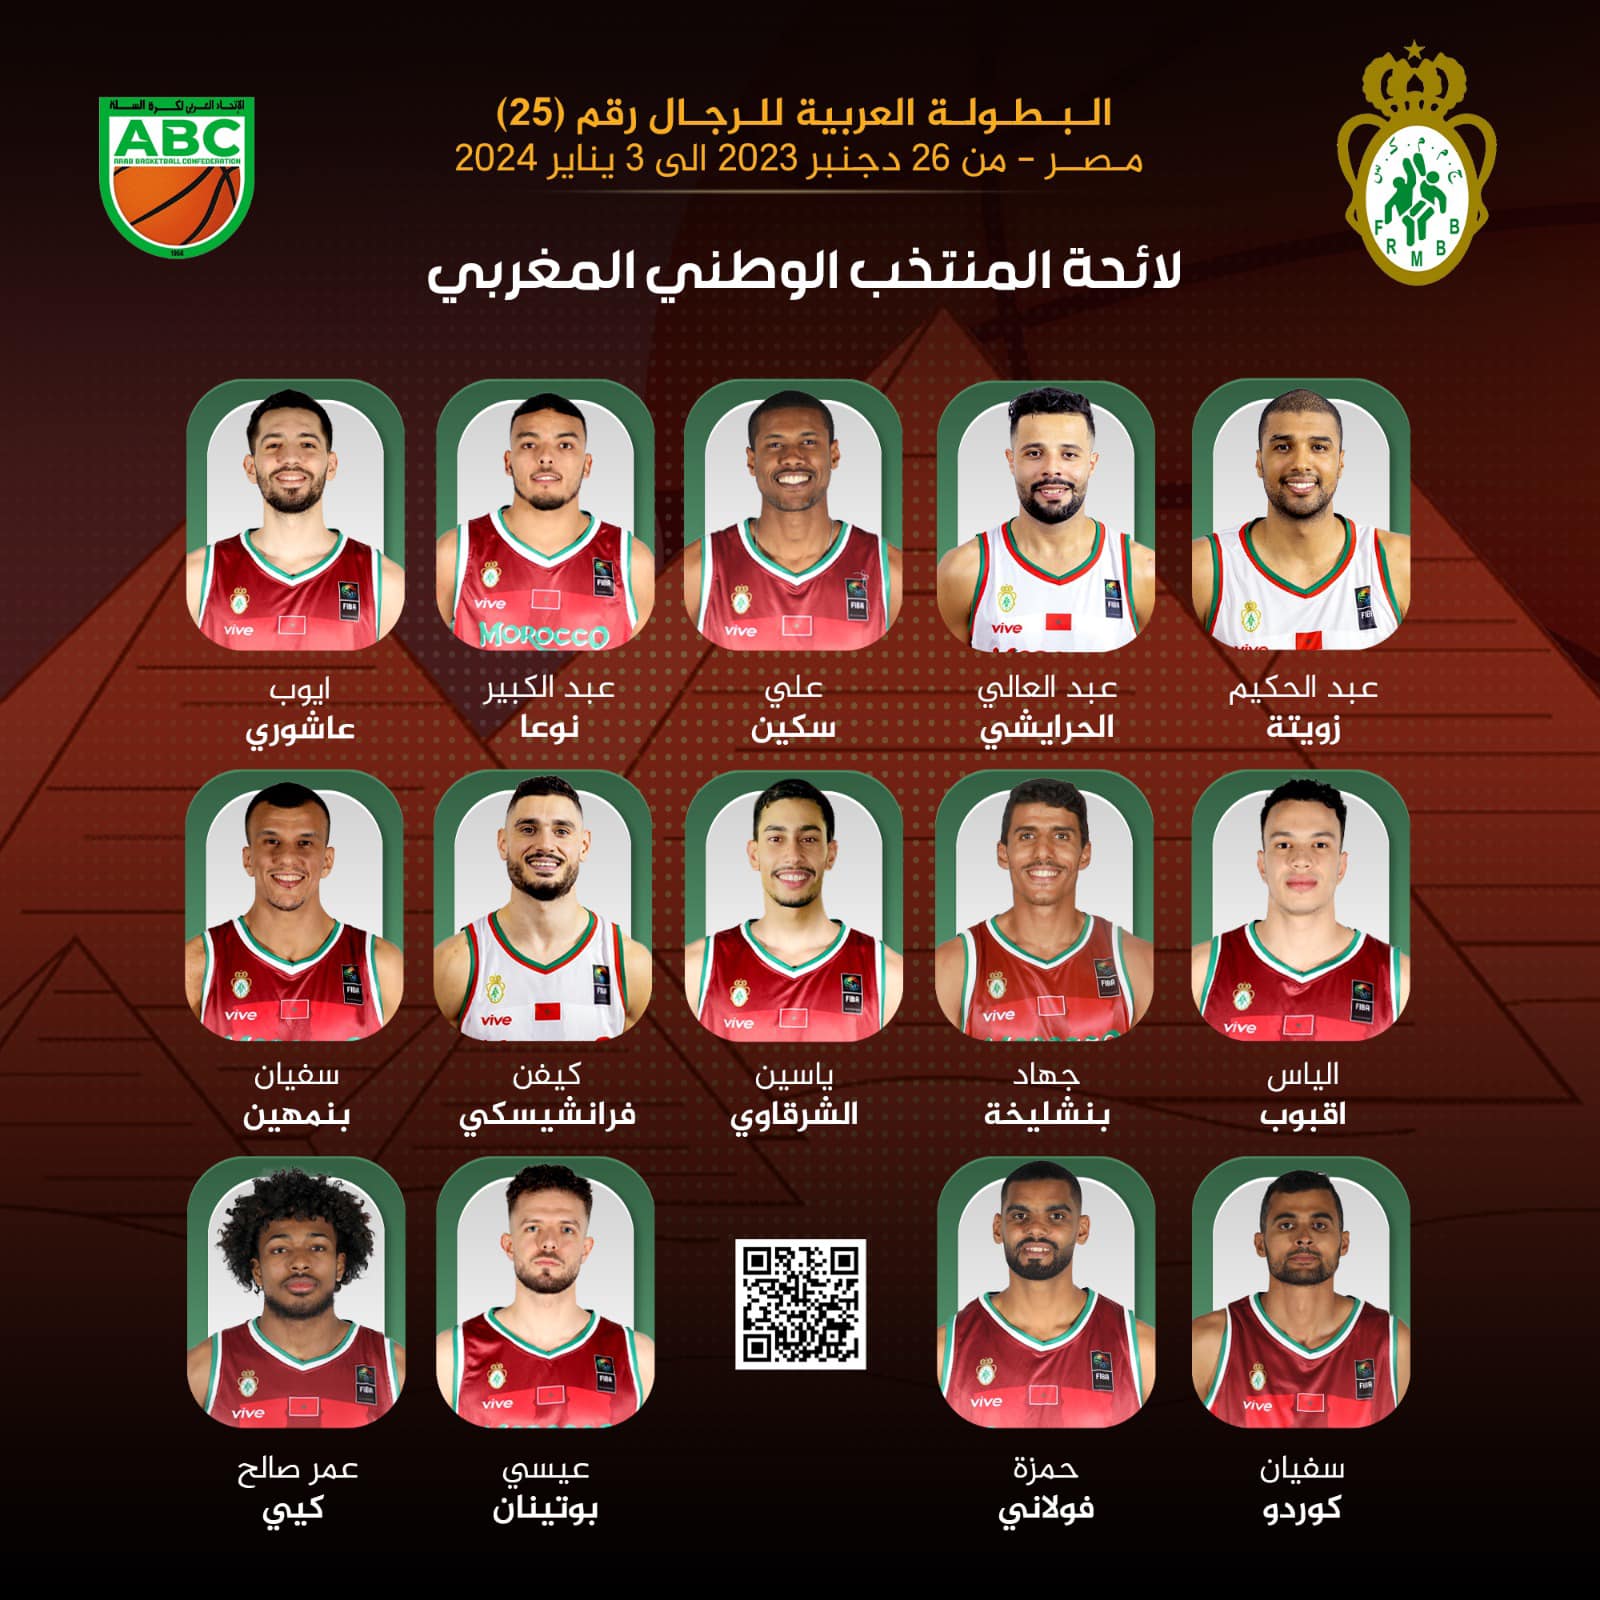 25e Championnat Arabe des Nations de Basketball / Equipe nationale:  La  14 retenus pour défendre les couleurs nationales 